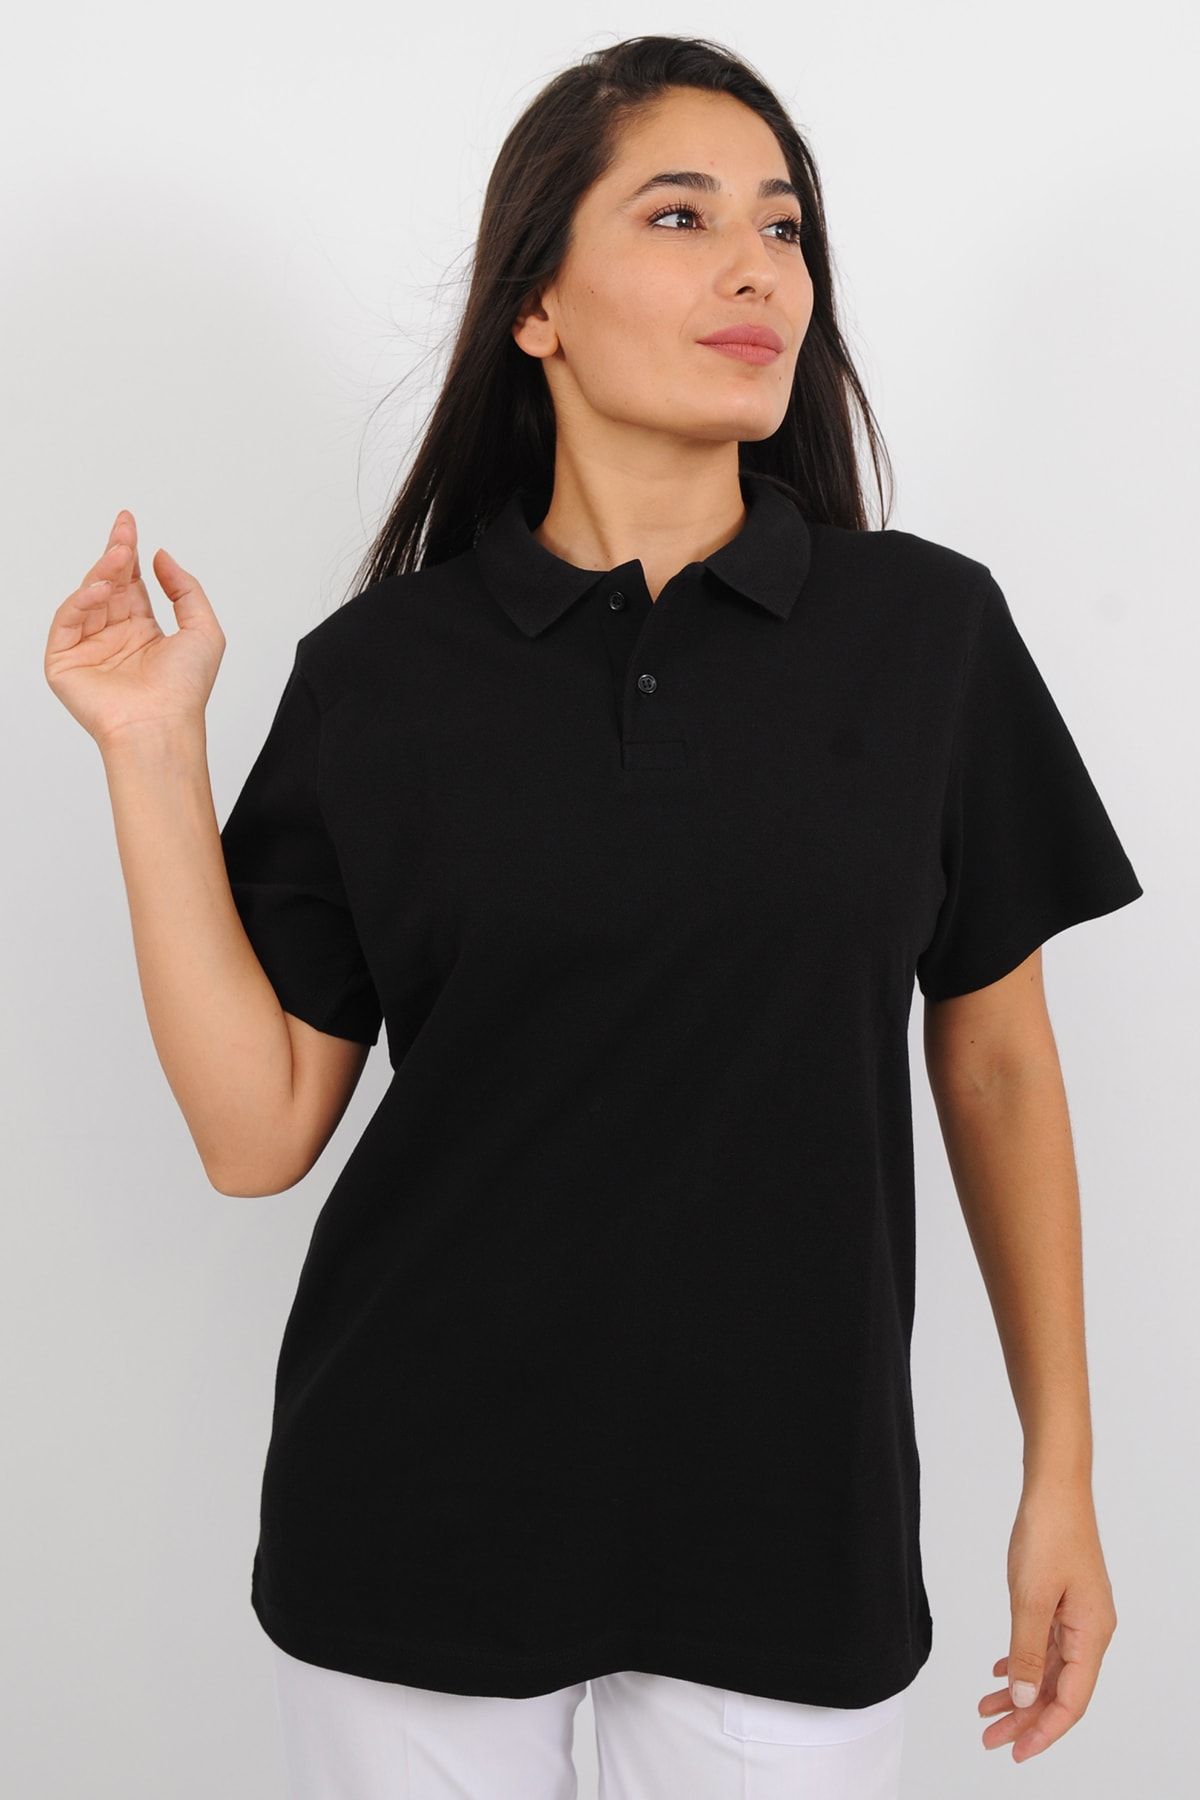 Lobby Uniform Kadın Polo Yaka Siyah T-shirt